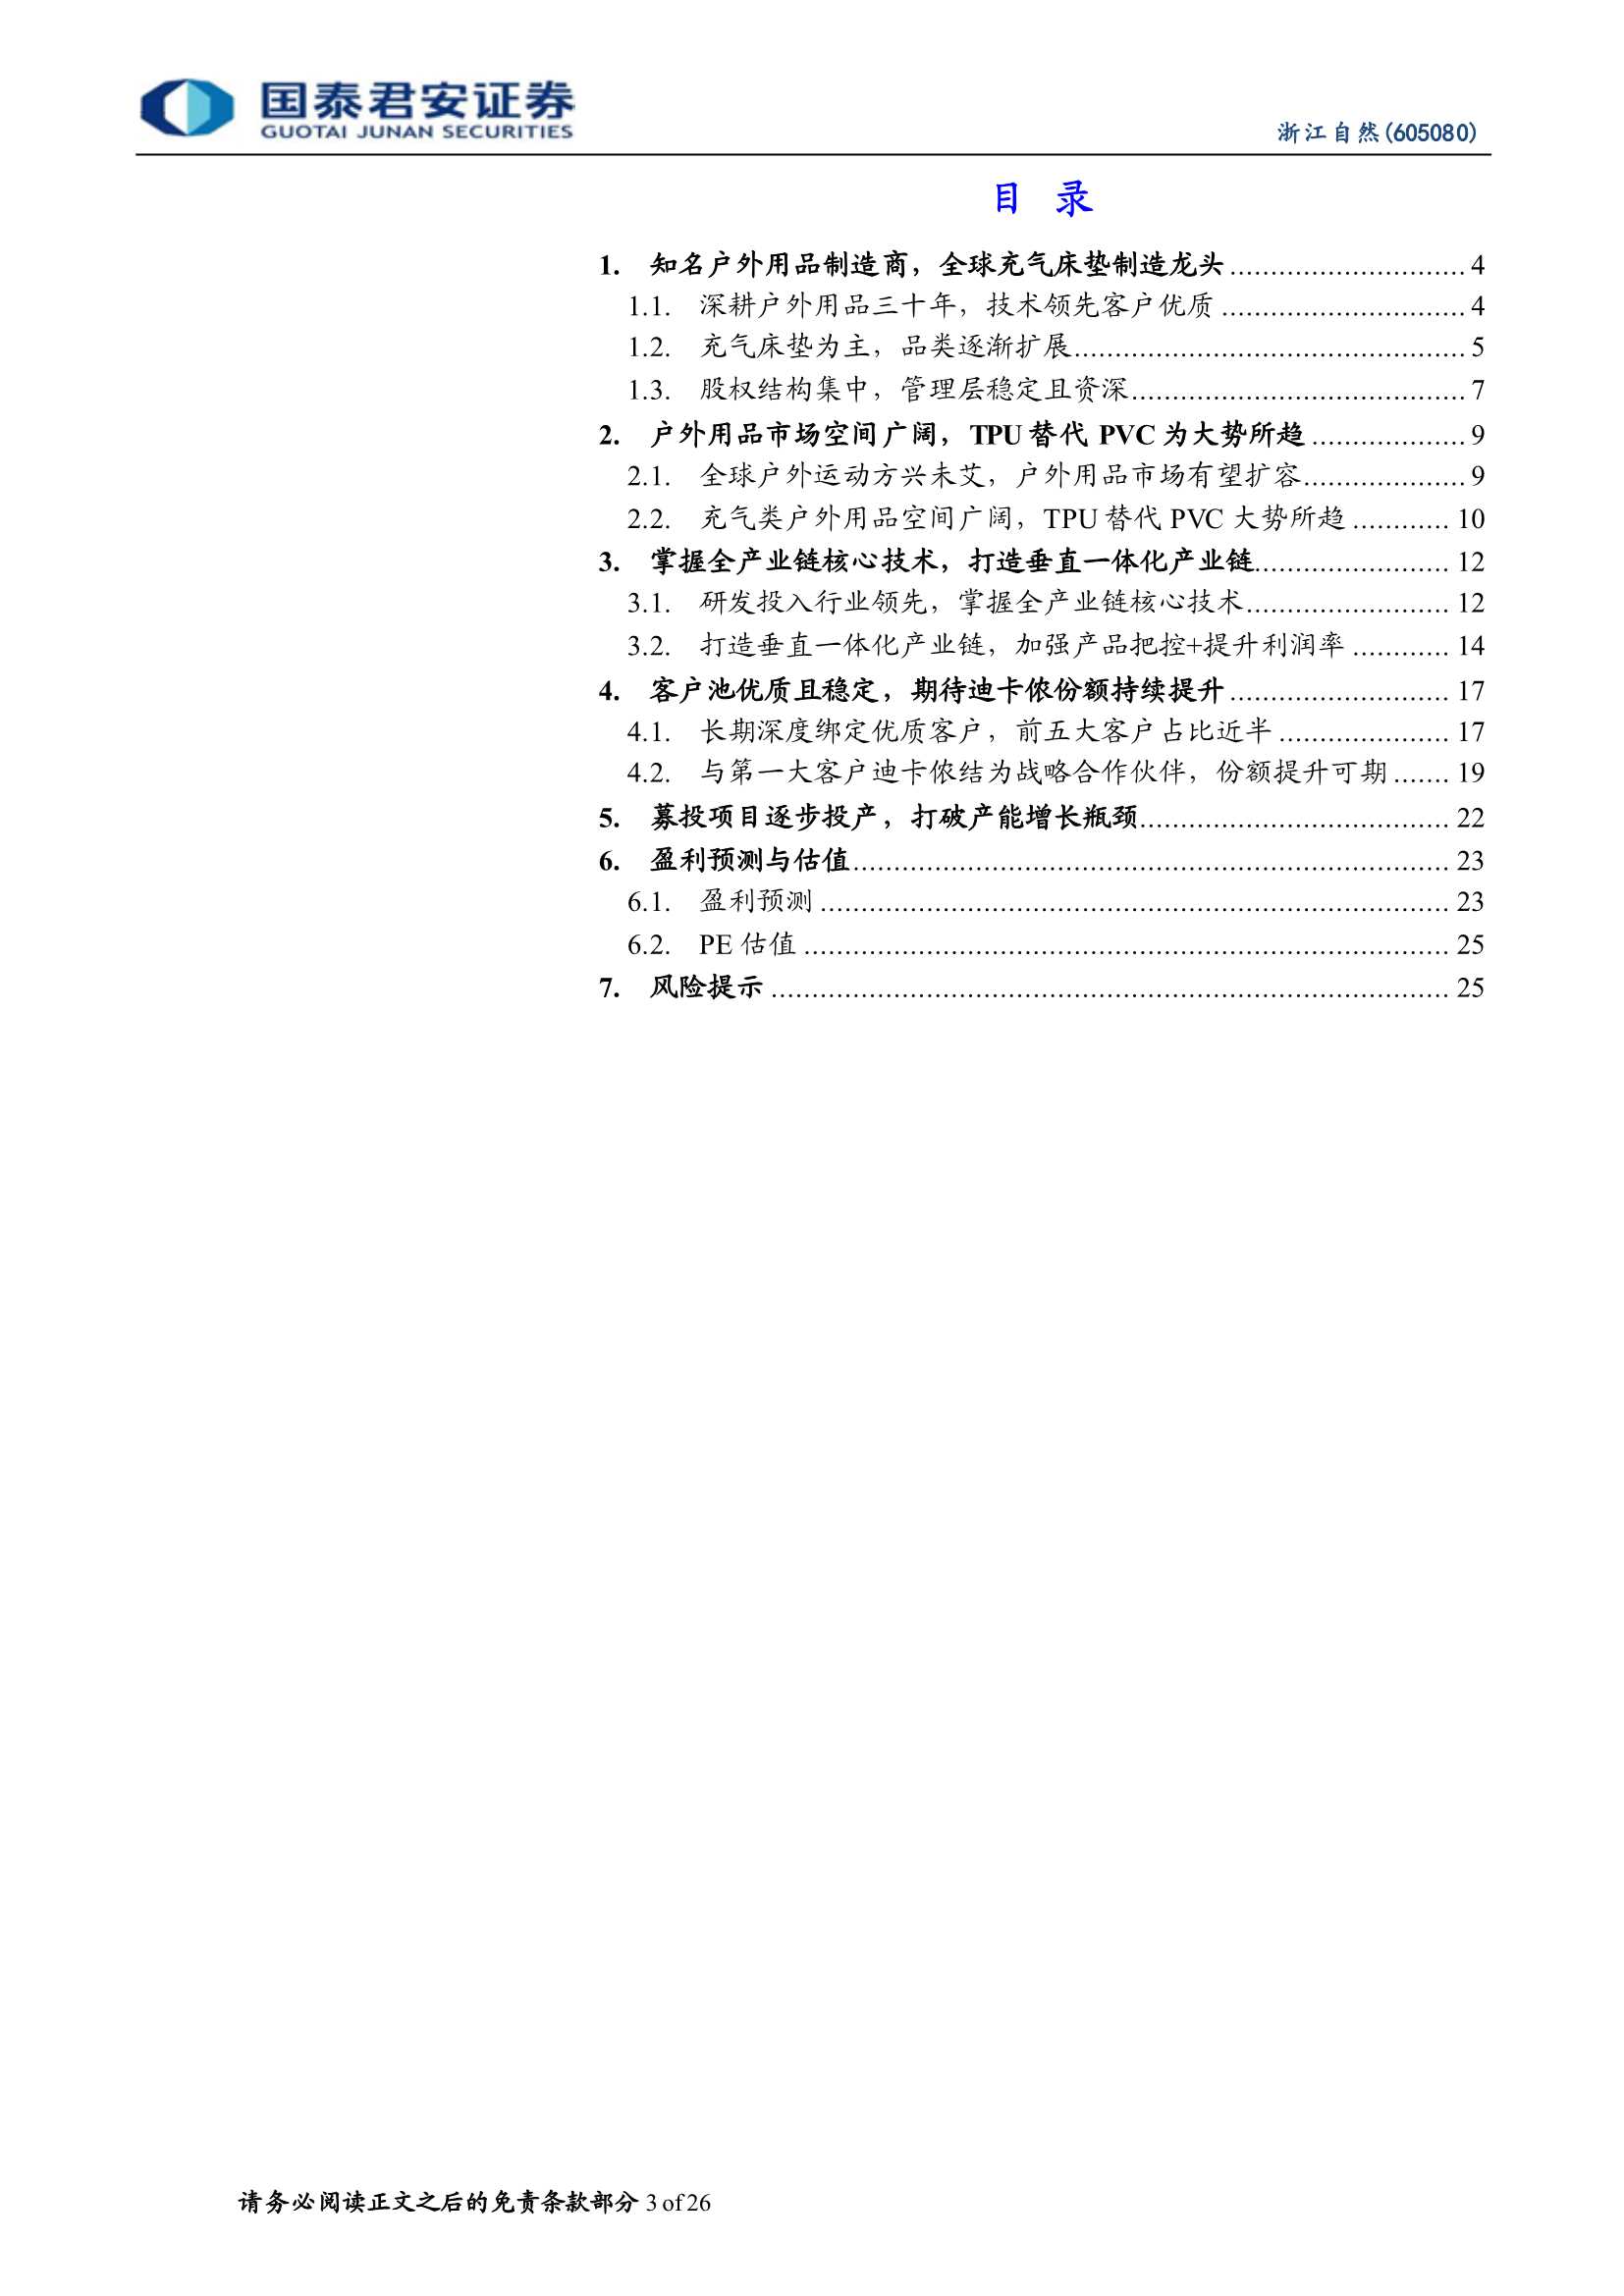 国泰君安-浙江自然-605080-垂直一体化户外代工龙头，期待大客户份额提升-20211213-26页